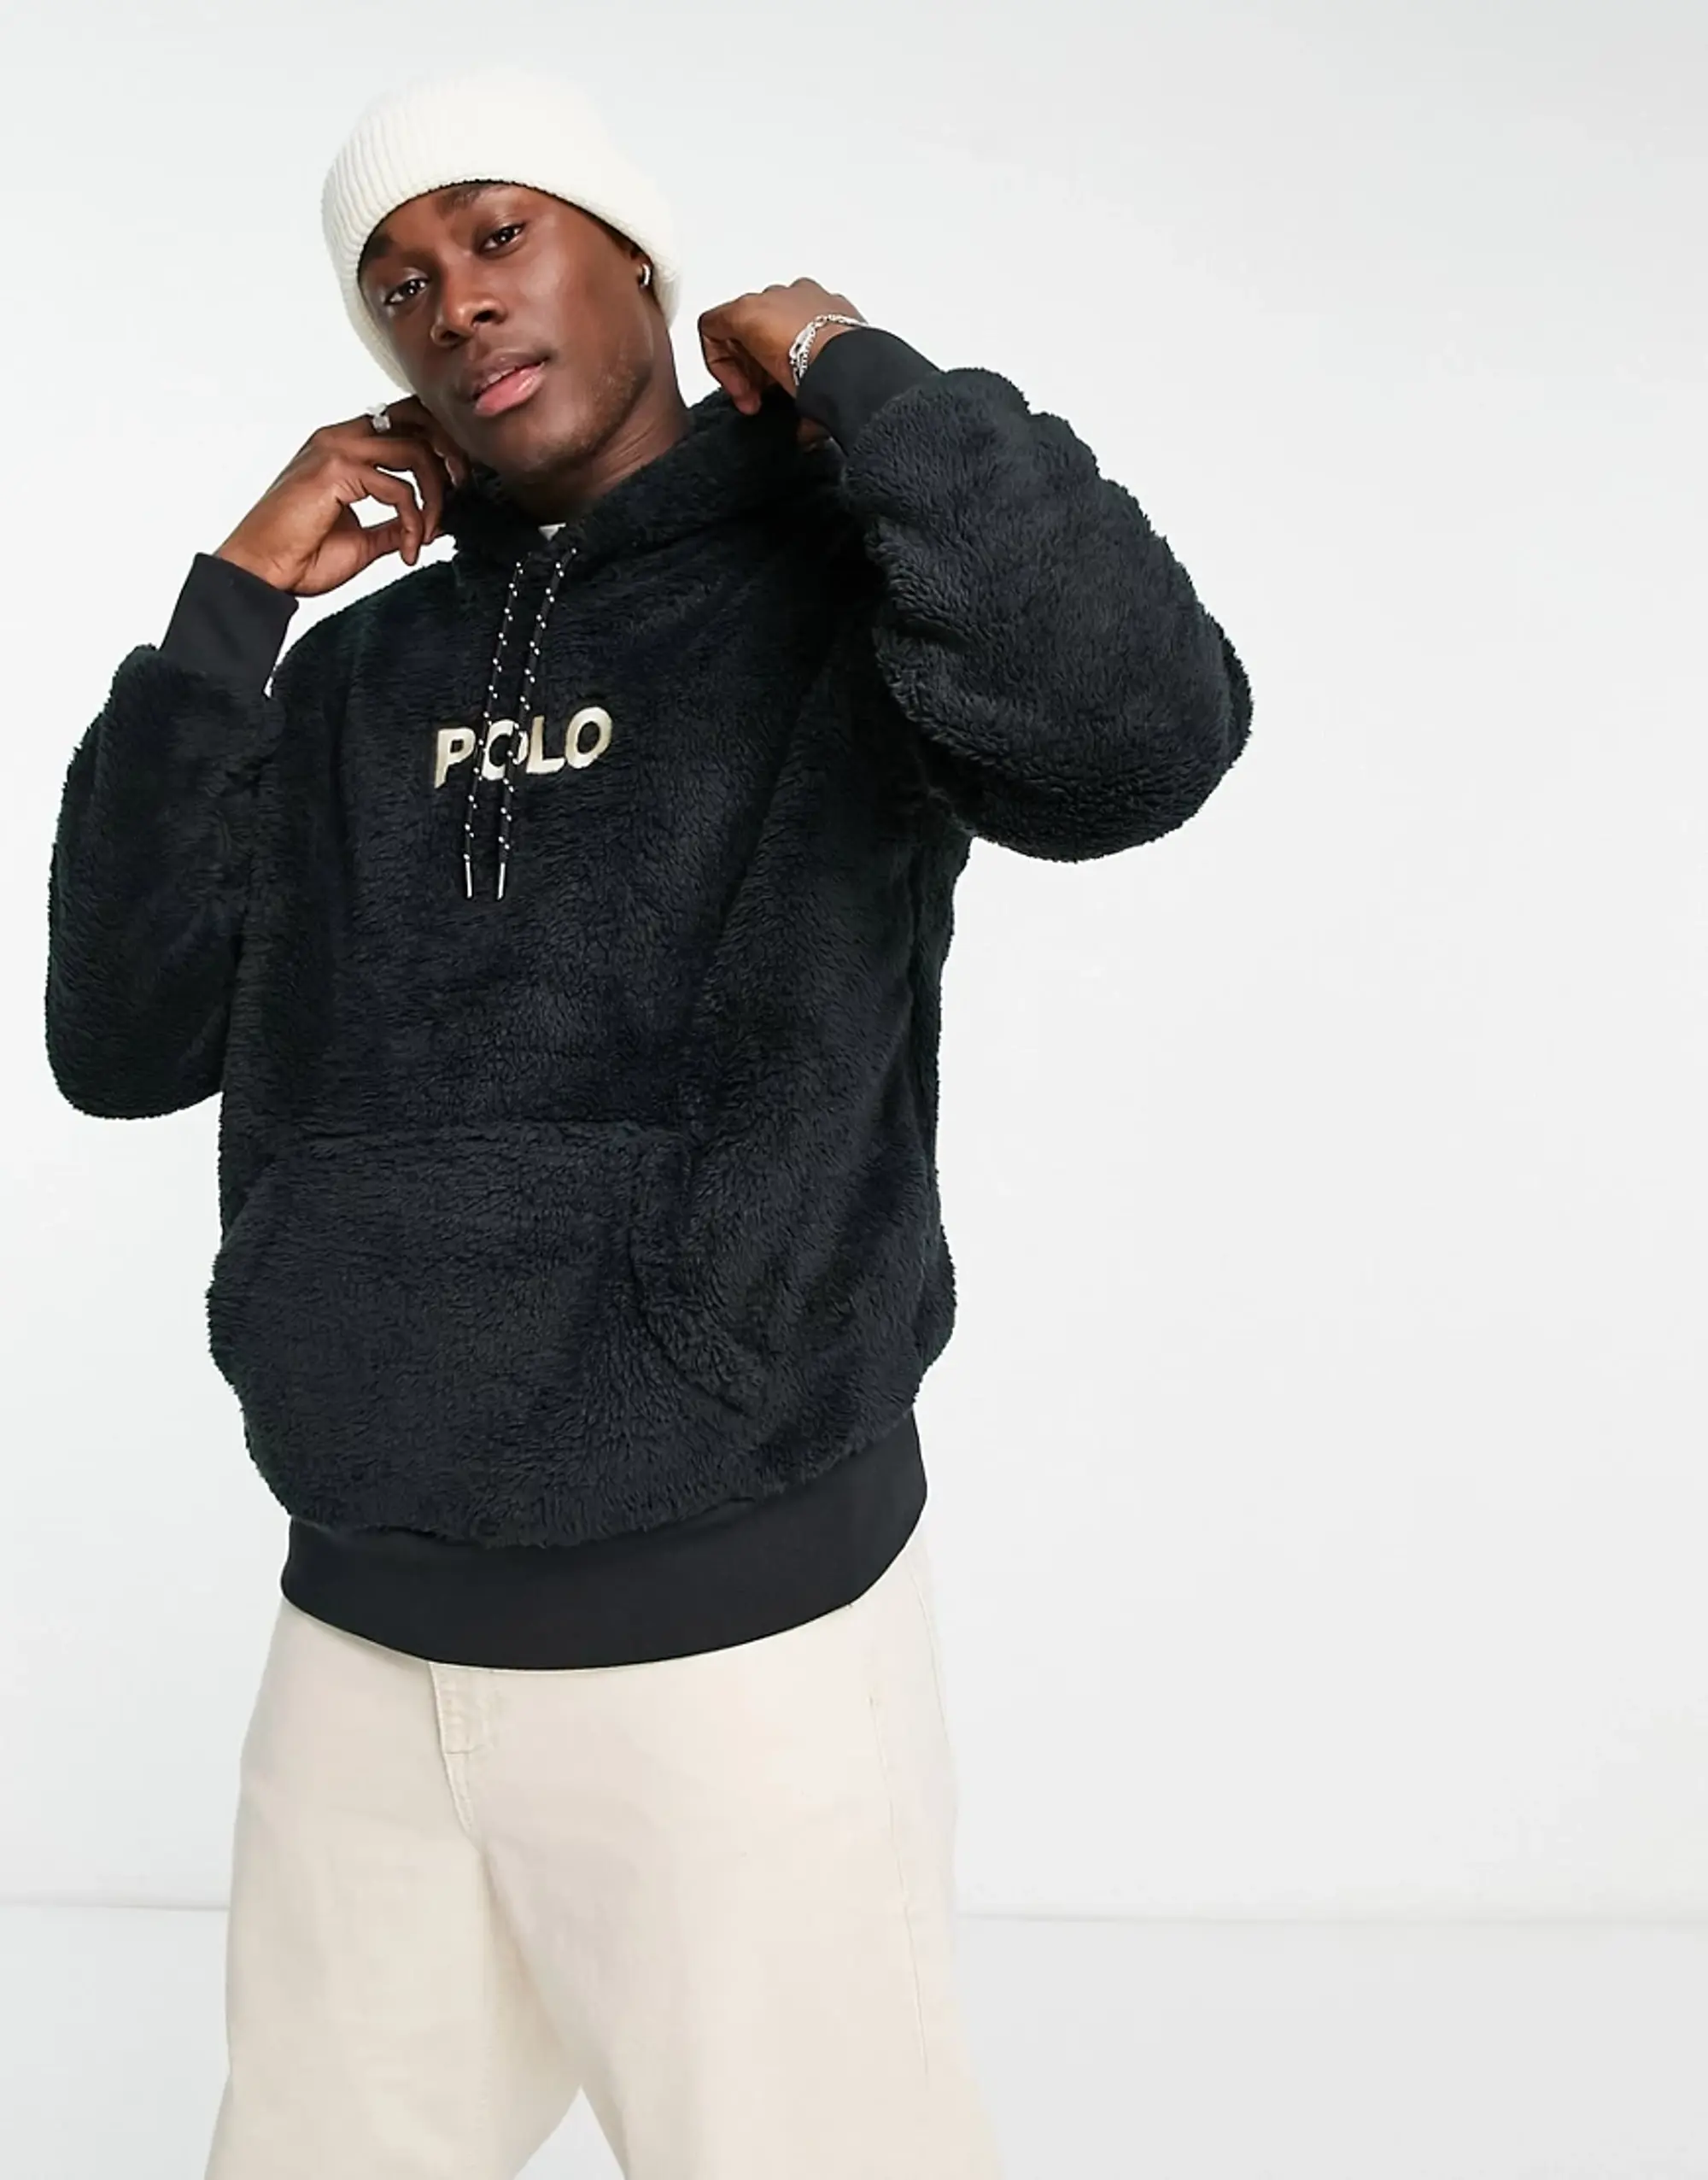 Polo Ralph Lauren Hooded Fleece - Polo Black